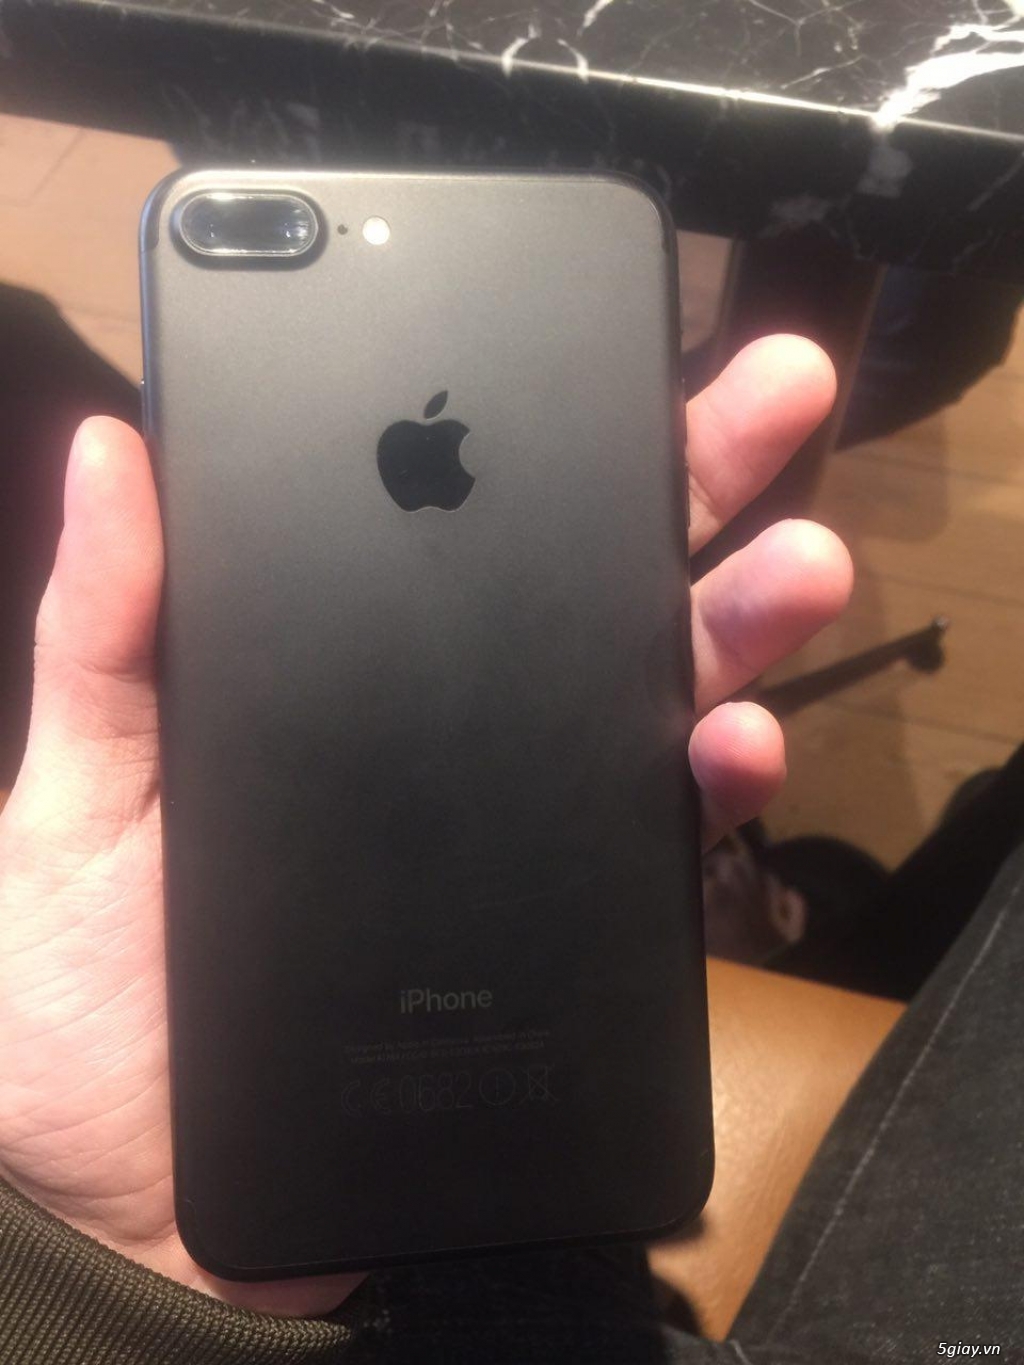 iphone 7plus 128g black đen nhám hàng fpt 1 đổi 1 - 2